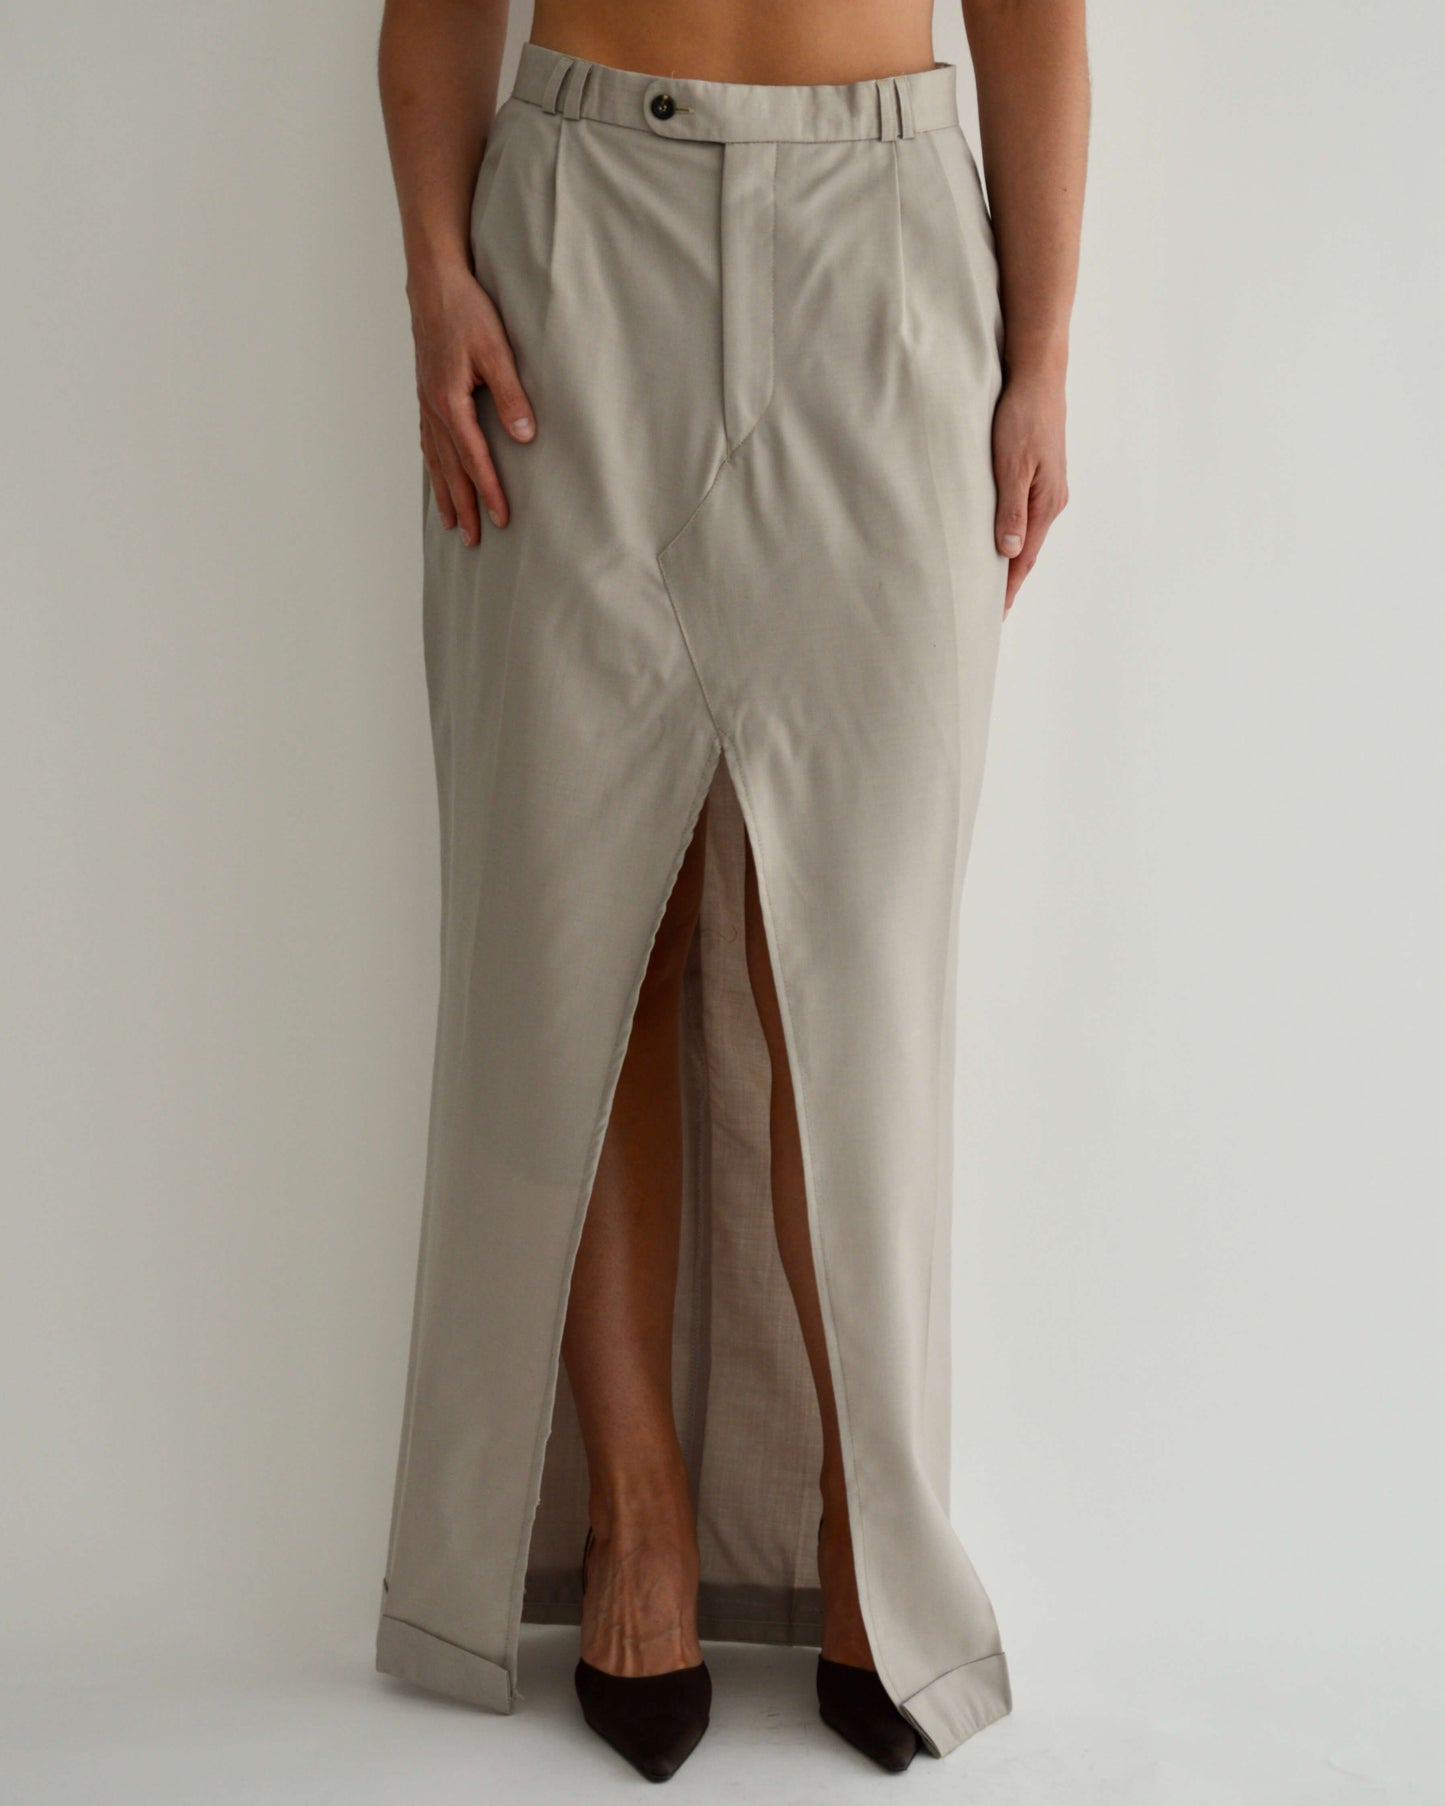 Long Skirt - Beige Tall (L/XL)